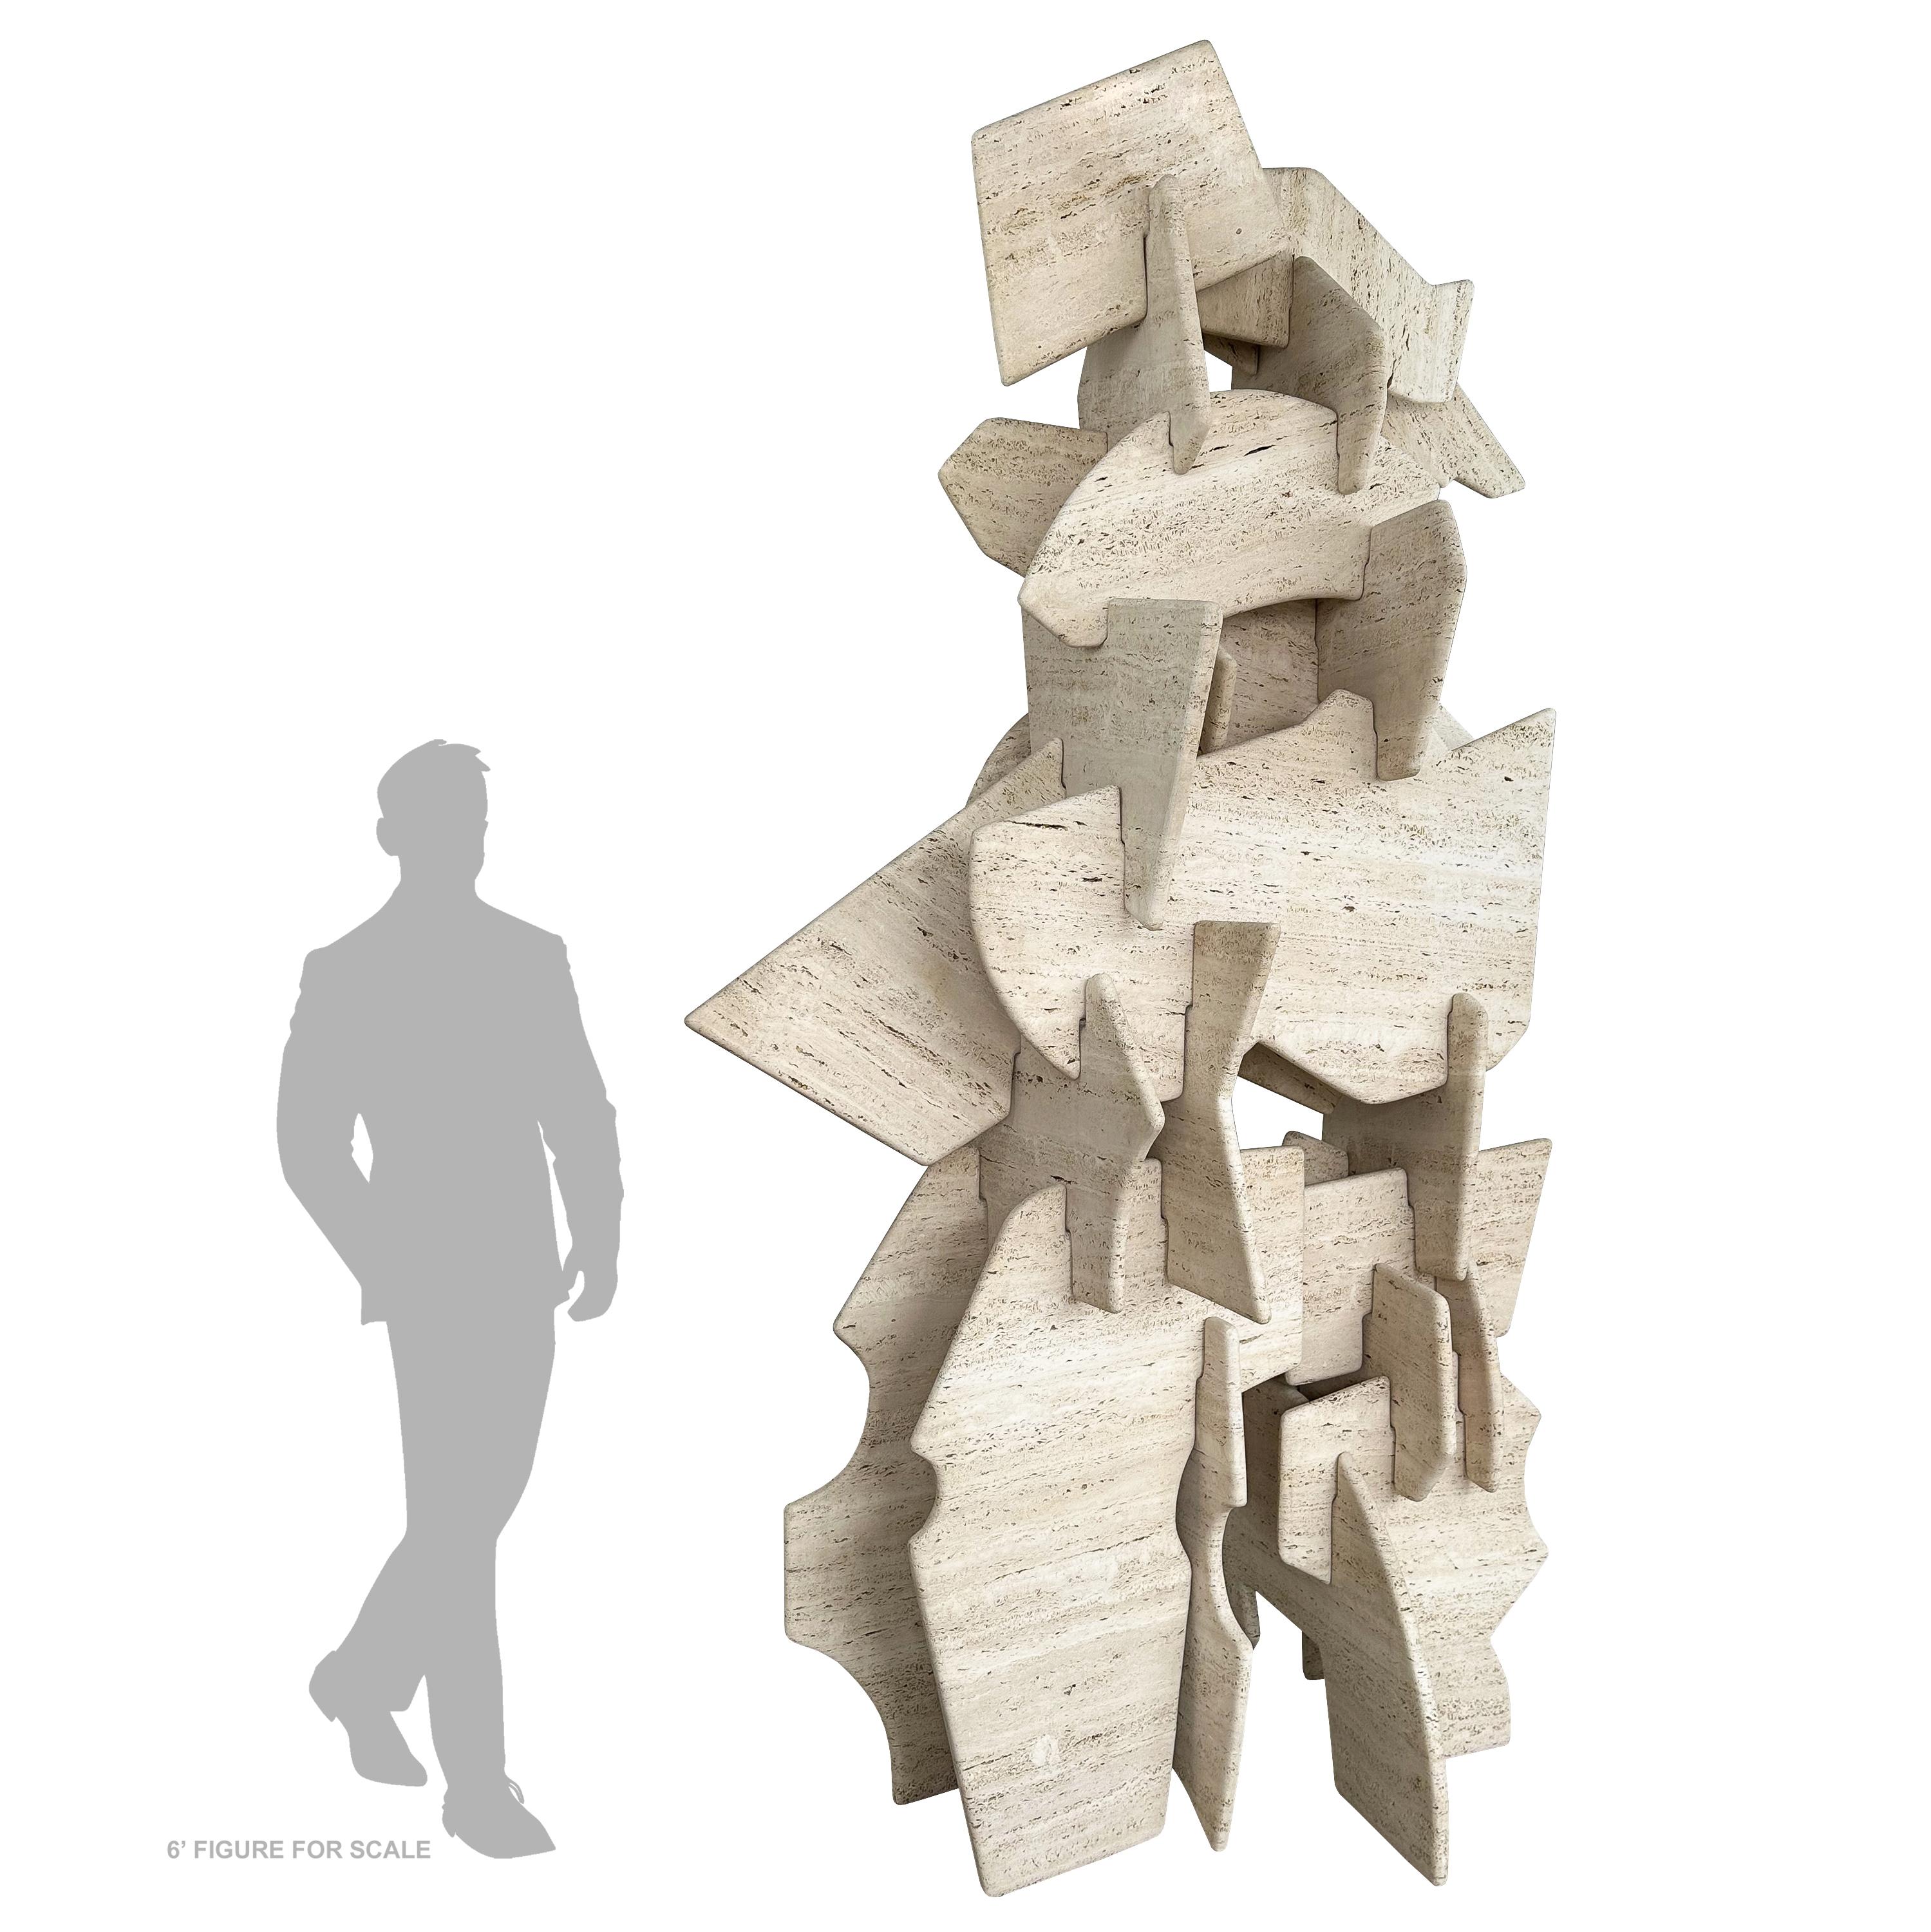 Entdecken Sie den Inbegriff künstlerischer Meisterschaft mit dieser unglaublichen, monumentalen, freistehenden Travertin-Skulptur des renommierten Künstlers Robert Winslow (geb. 1950). Dieses beeindruckende Kunstwerk mit dem Titel 